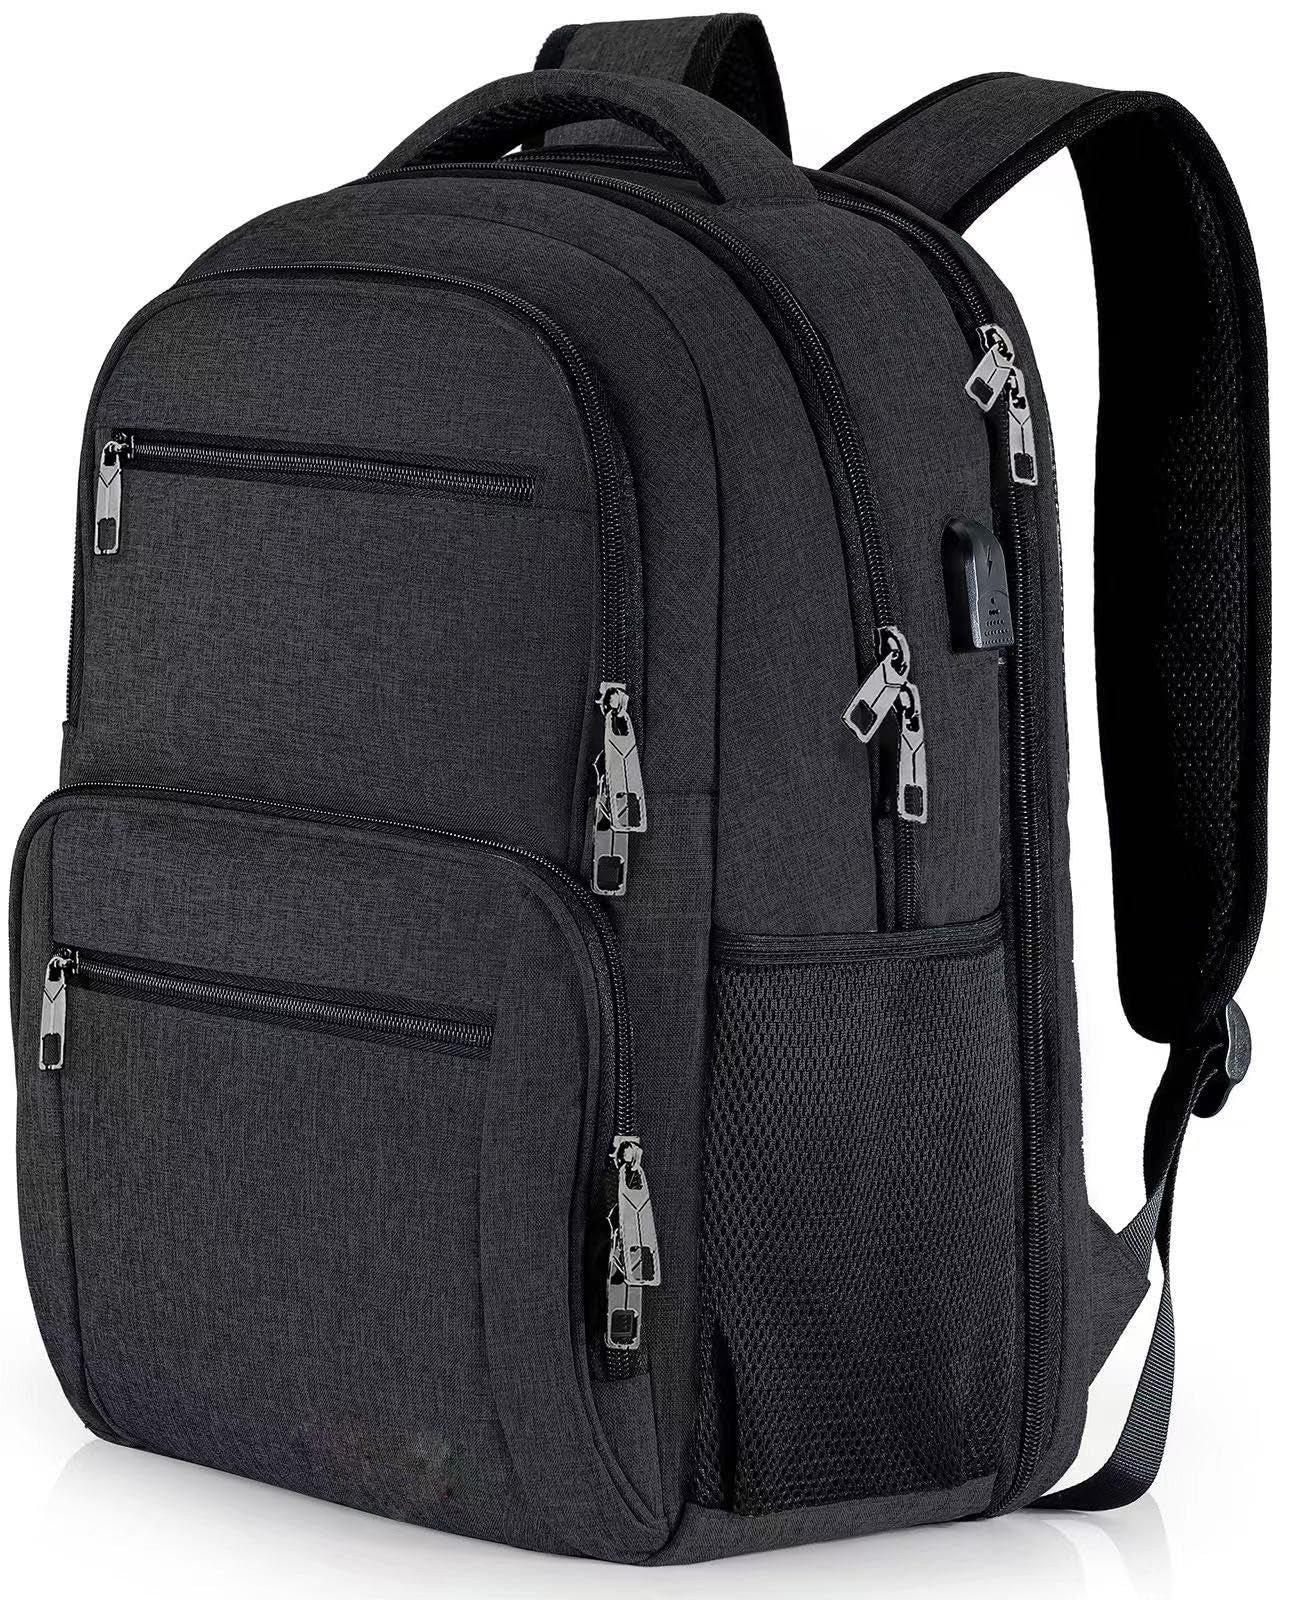 Only-bags.store Rucksack, Schulrucksack wasserdicht Arbeit Laptop mit USB-Ladeanschluss, Reisen Wanderrucksack  